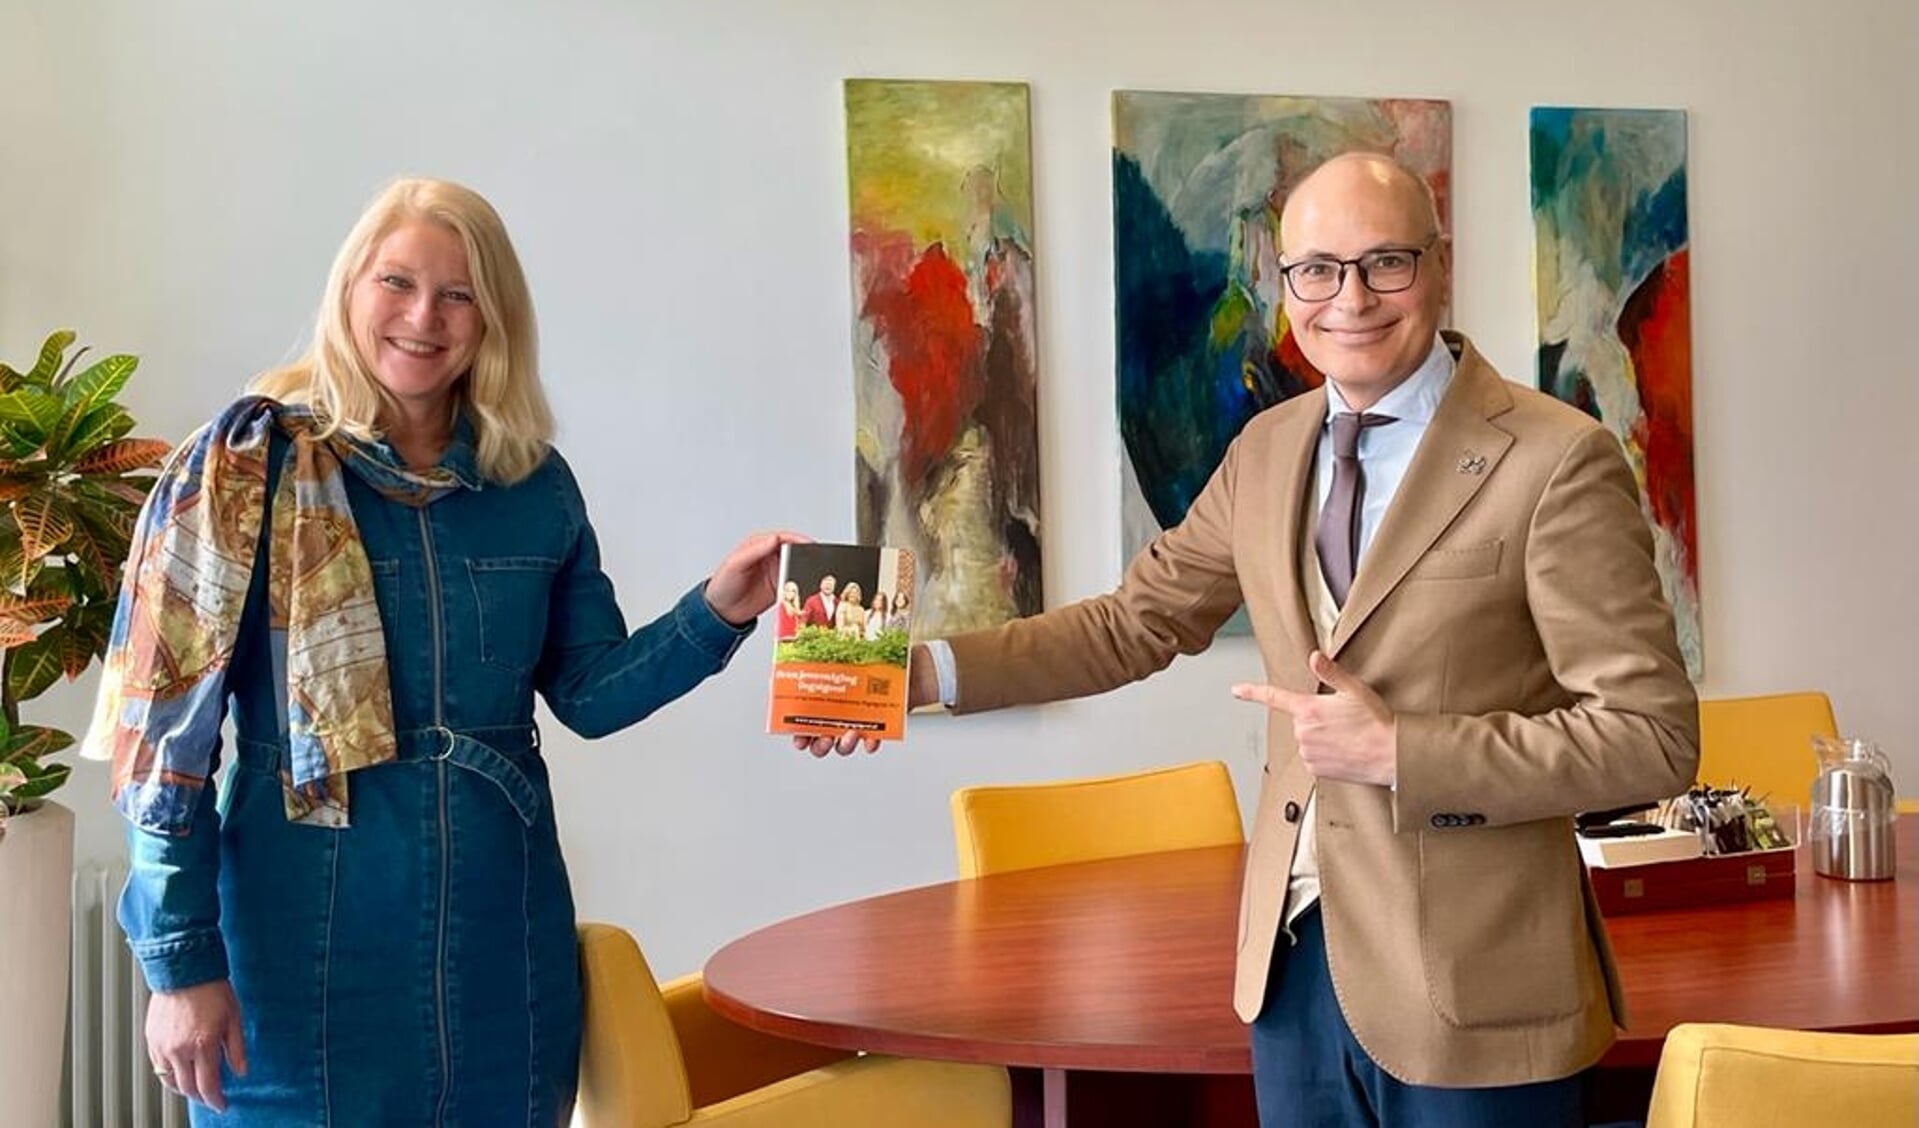 Burgemeester Emile Jaensch neemt het eerste programmaboekje in ontvangst van Oranjeverenigingvoorzitter Linda van der Zon.